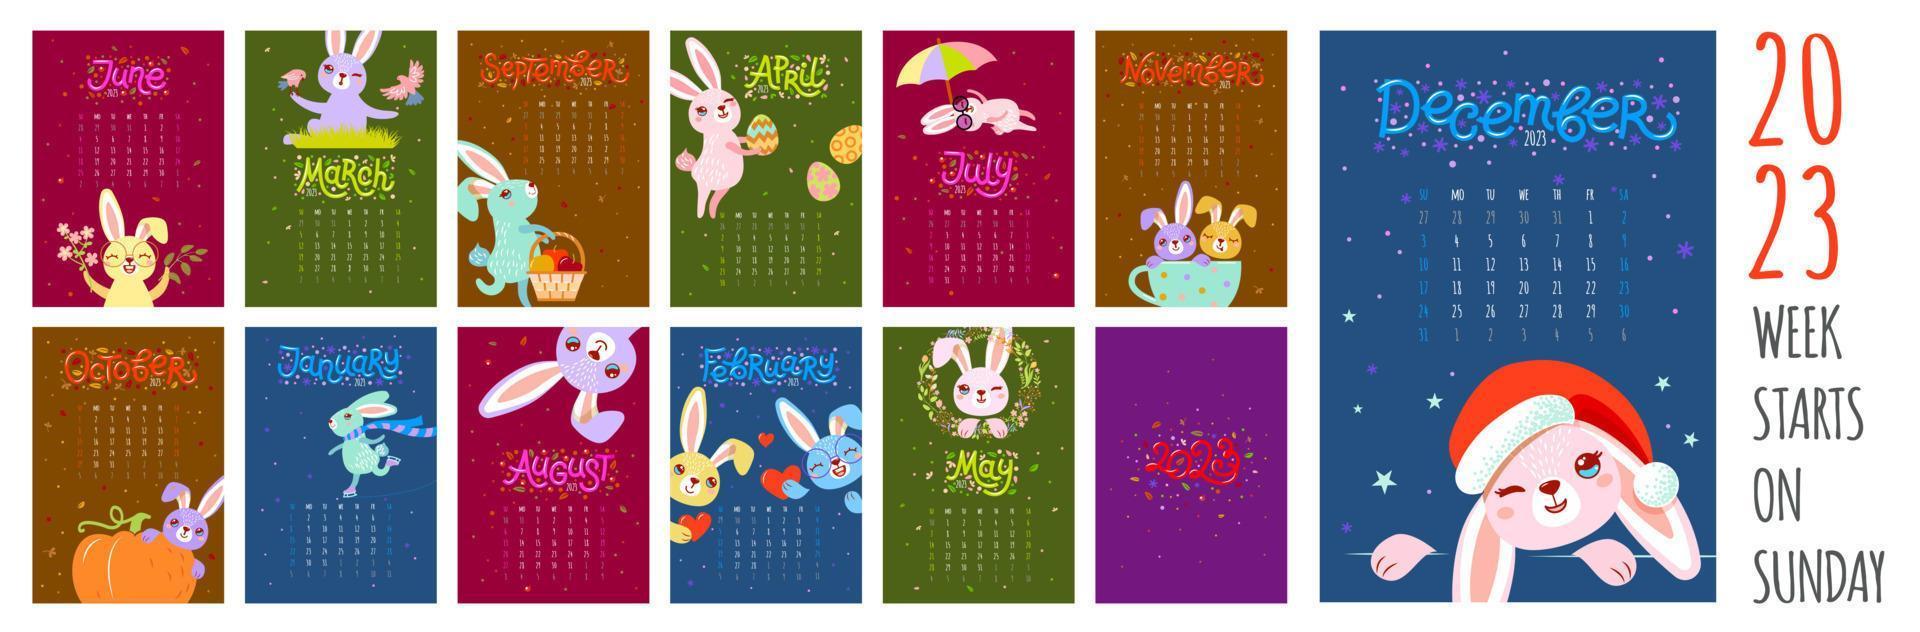 calendário 2023 com coelho, organizador planejador. capas e páginas de 12 meses do coelho mascote símbolo do ano. a semana começa no domingo. vetor